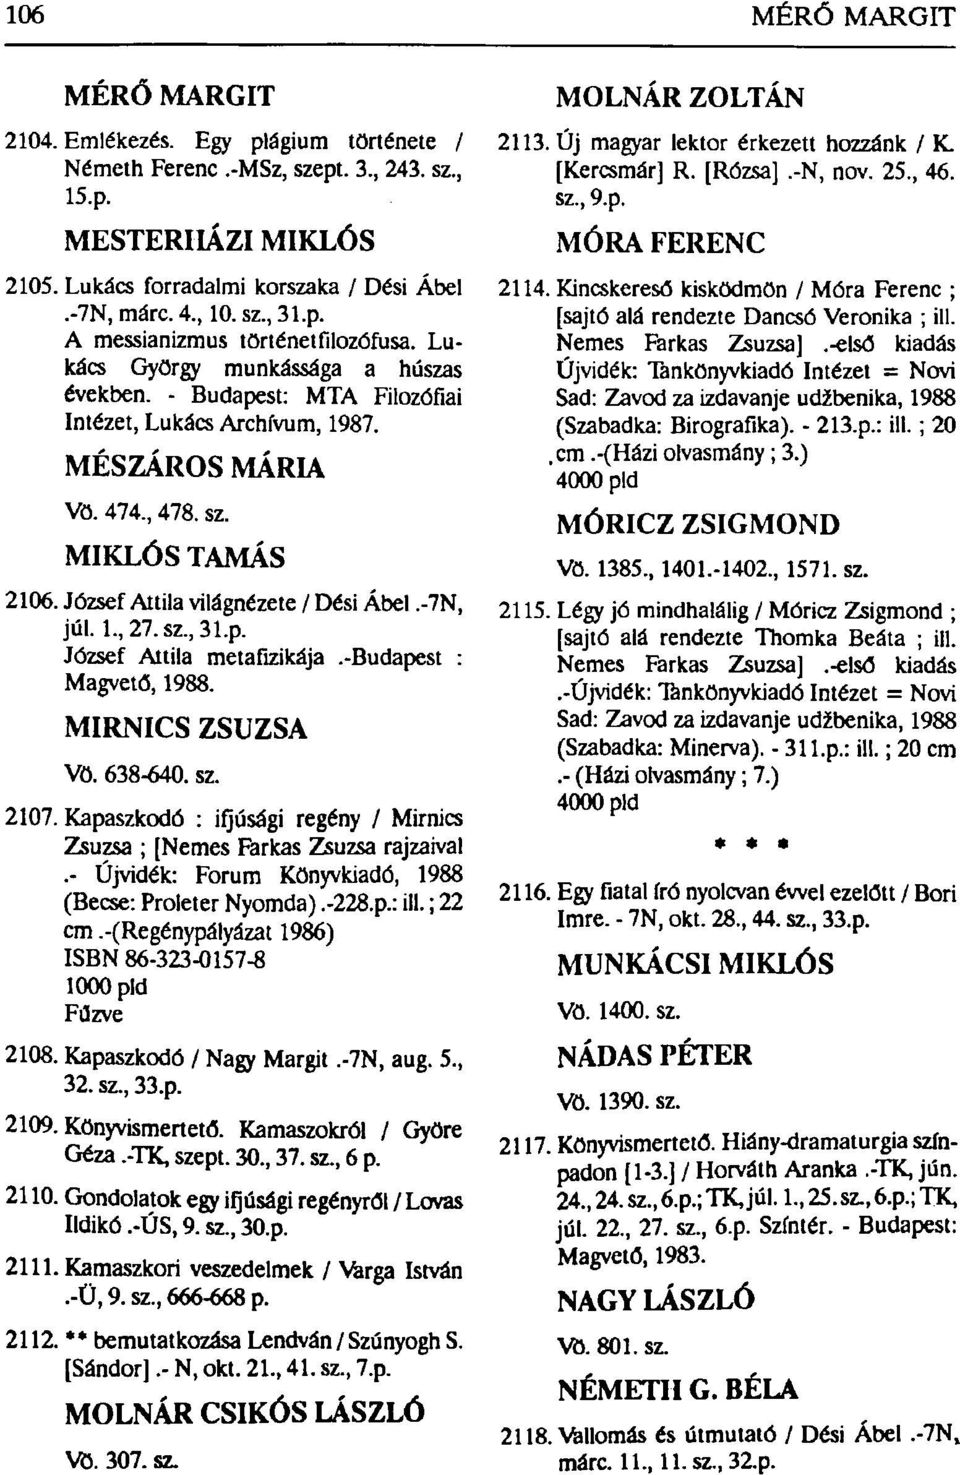 József Attila világnézete / Dési Ábel.-7N, júl. 1, 27.sz,31.p. József Attila metafizikája.-budapest : Magvető, 1988. MIRNICS ZSUZSA Vö. 638-640. sz. 2107.